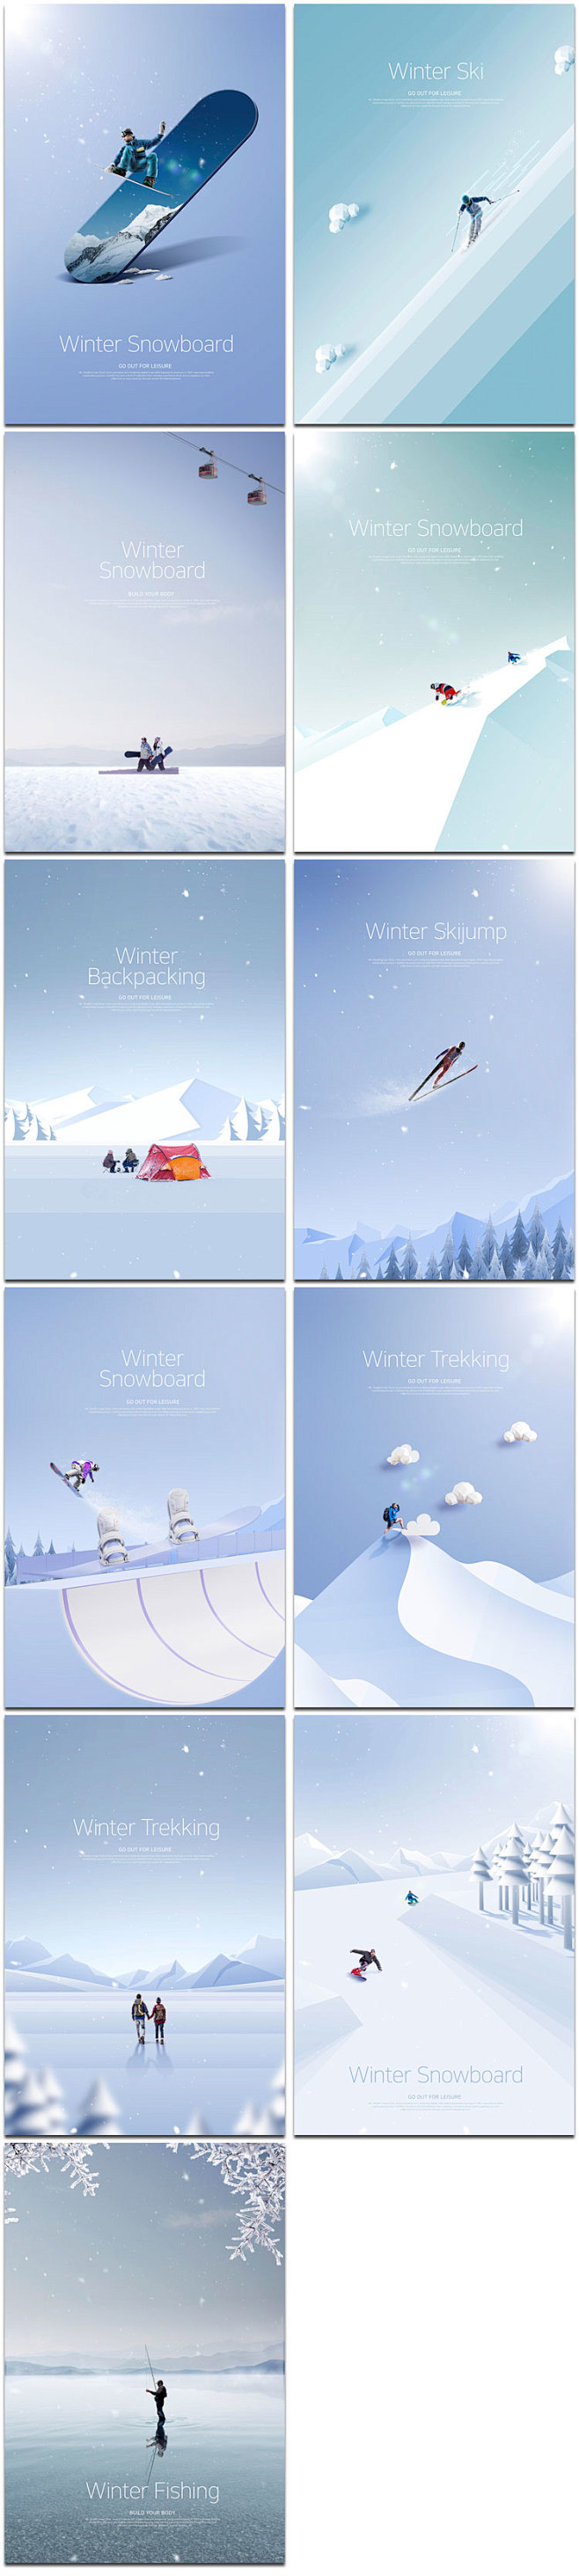 创意滑雪天滑冰刺激运动冬天冰雪插画图海报...